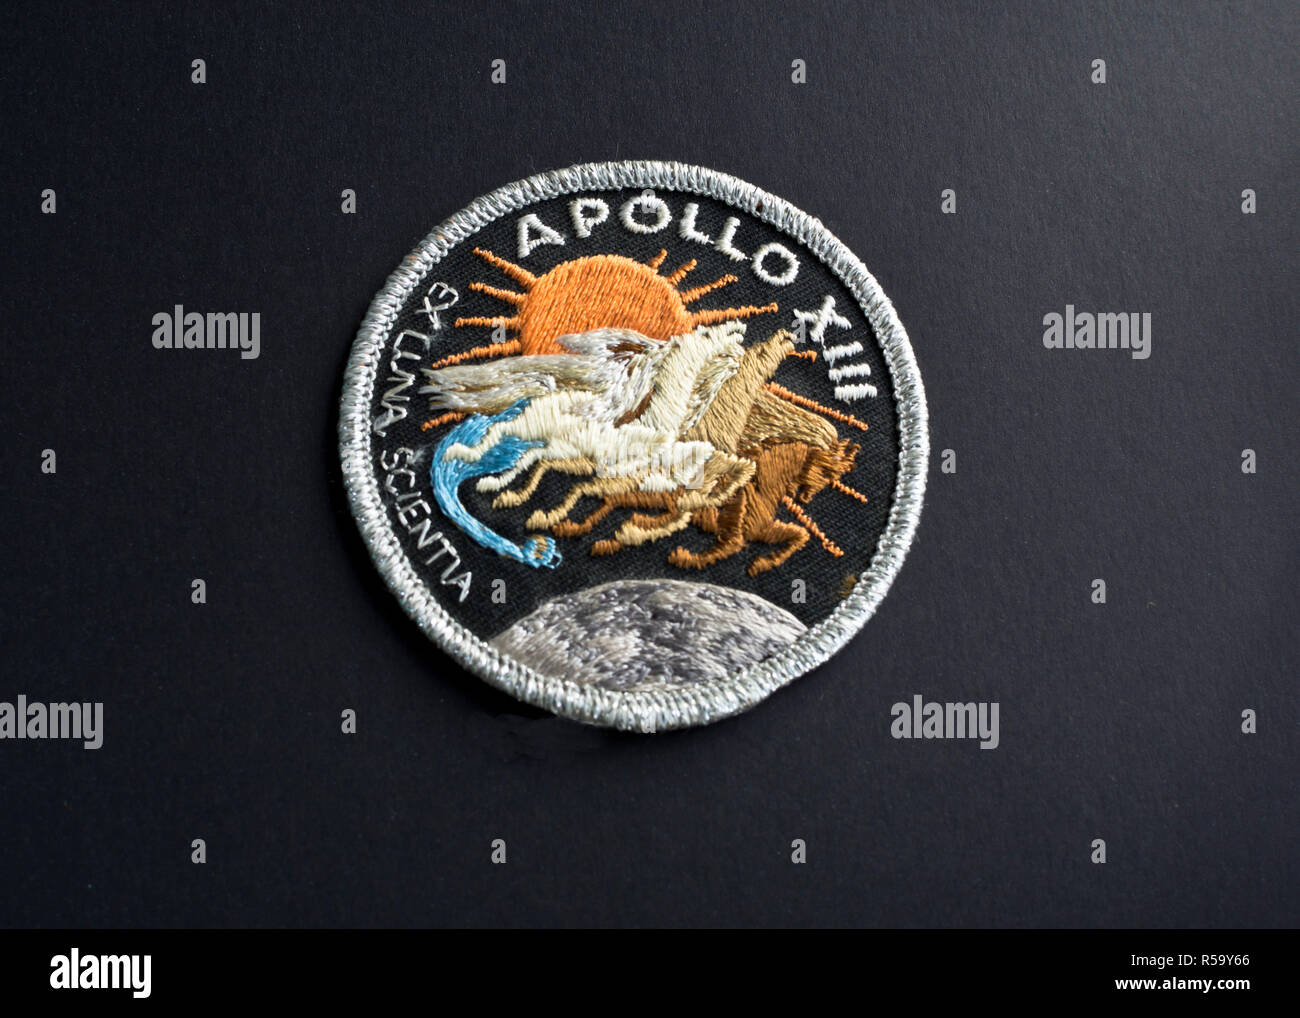 Missione patch dalla NASA Apollo 13 volo spaziale. Badge di missione per Apollo XIII volo spaziale. Foto Stock